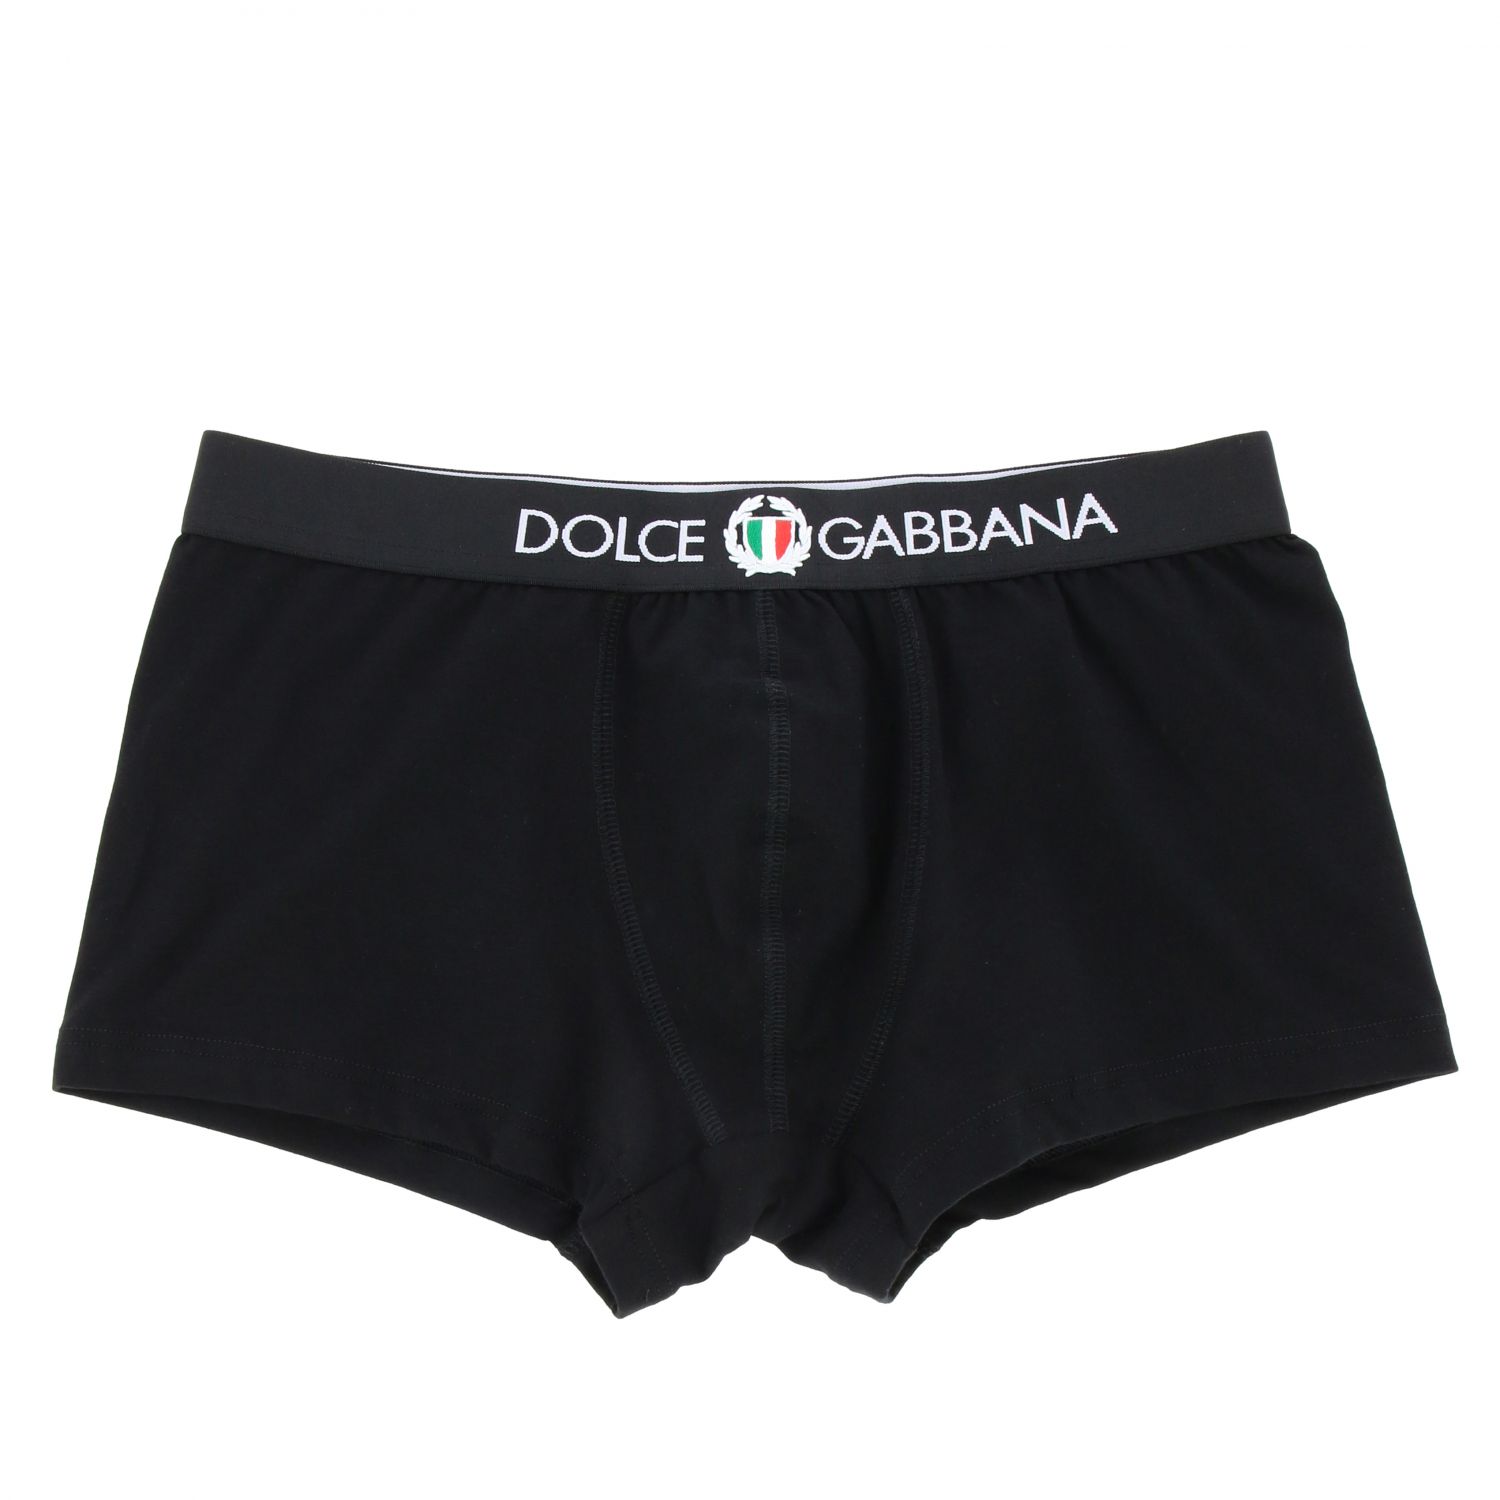 dolce and gabbana men underwear